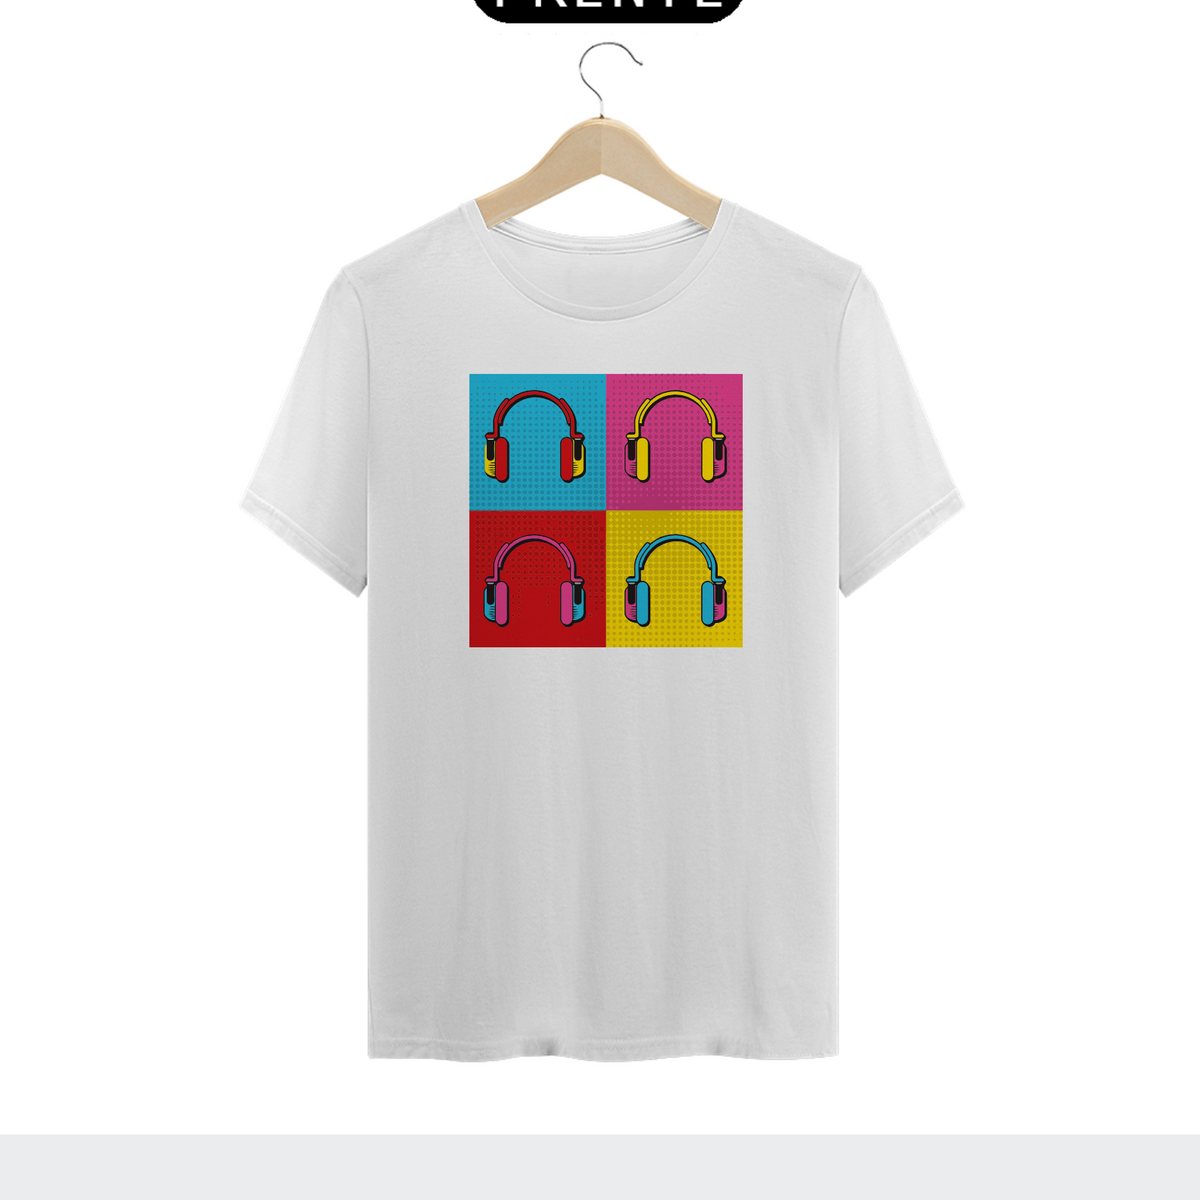 Nome do produto: HEADPHONE POP ART - Camiseta Personalizada com Estampa Pop Art Geek